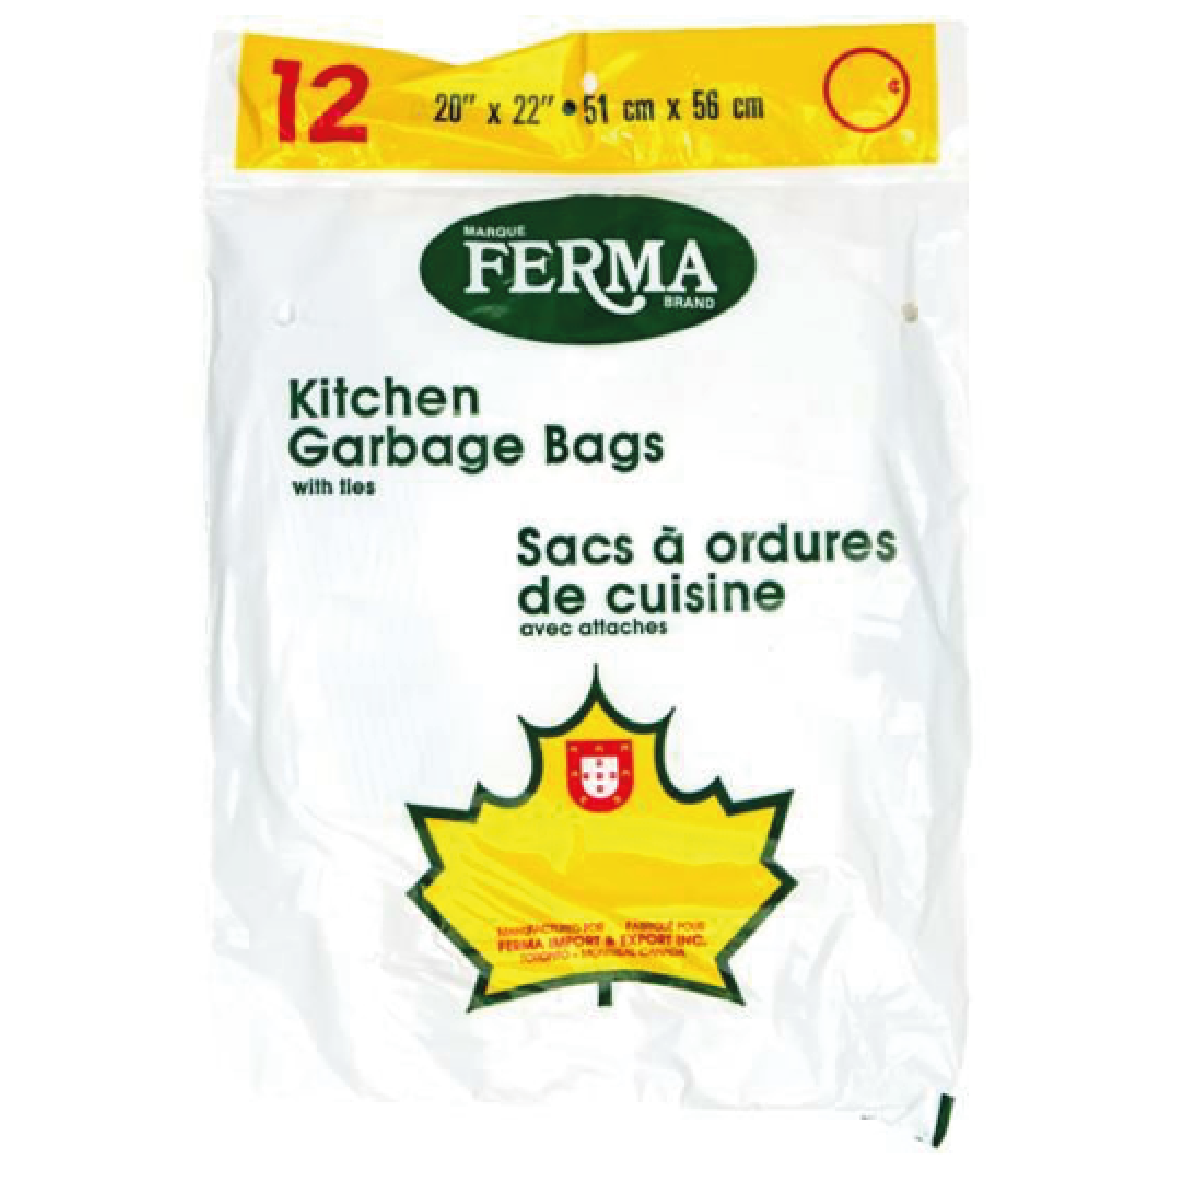 Ferma Kitchen Garbage Bags 12pk